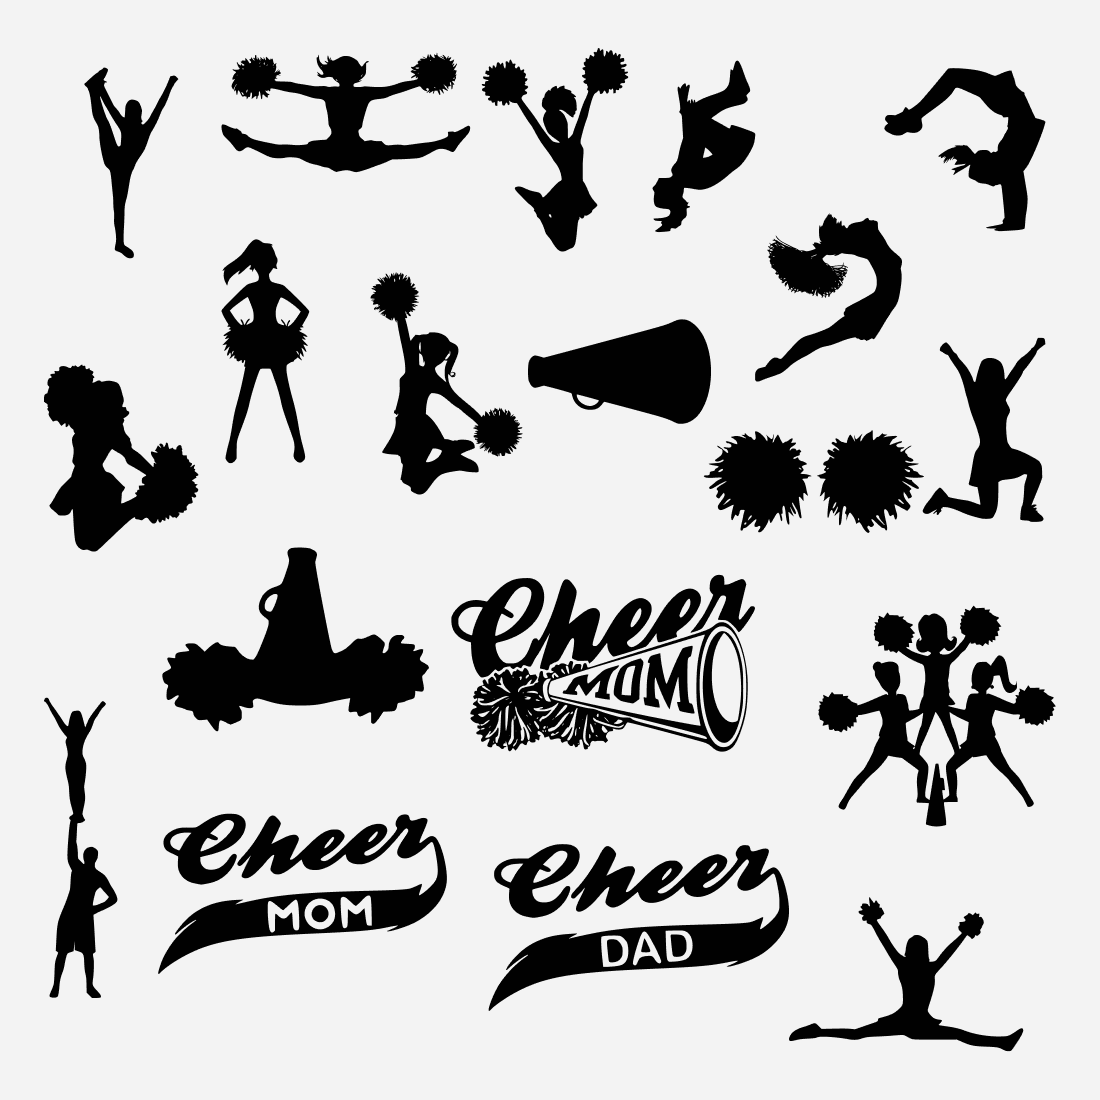 Black silhouettes of cheerleaders.